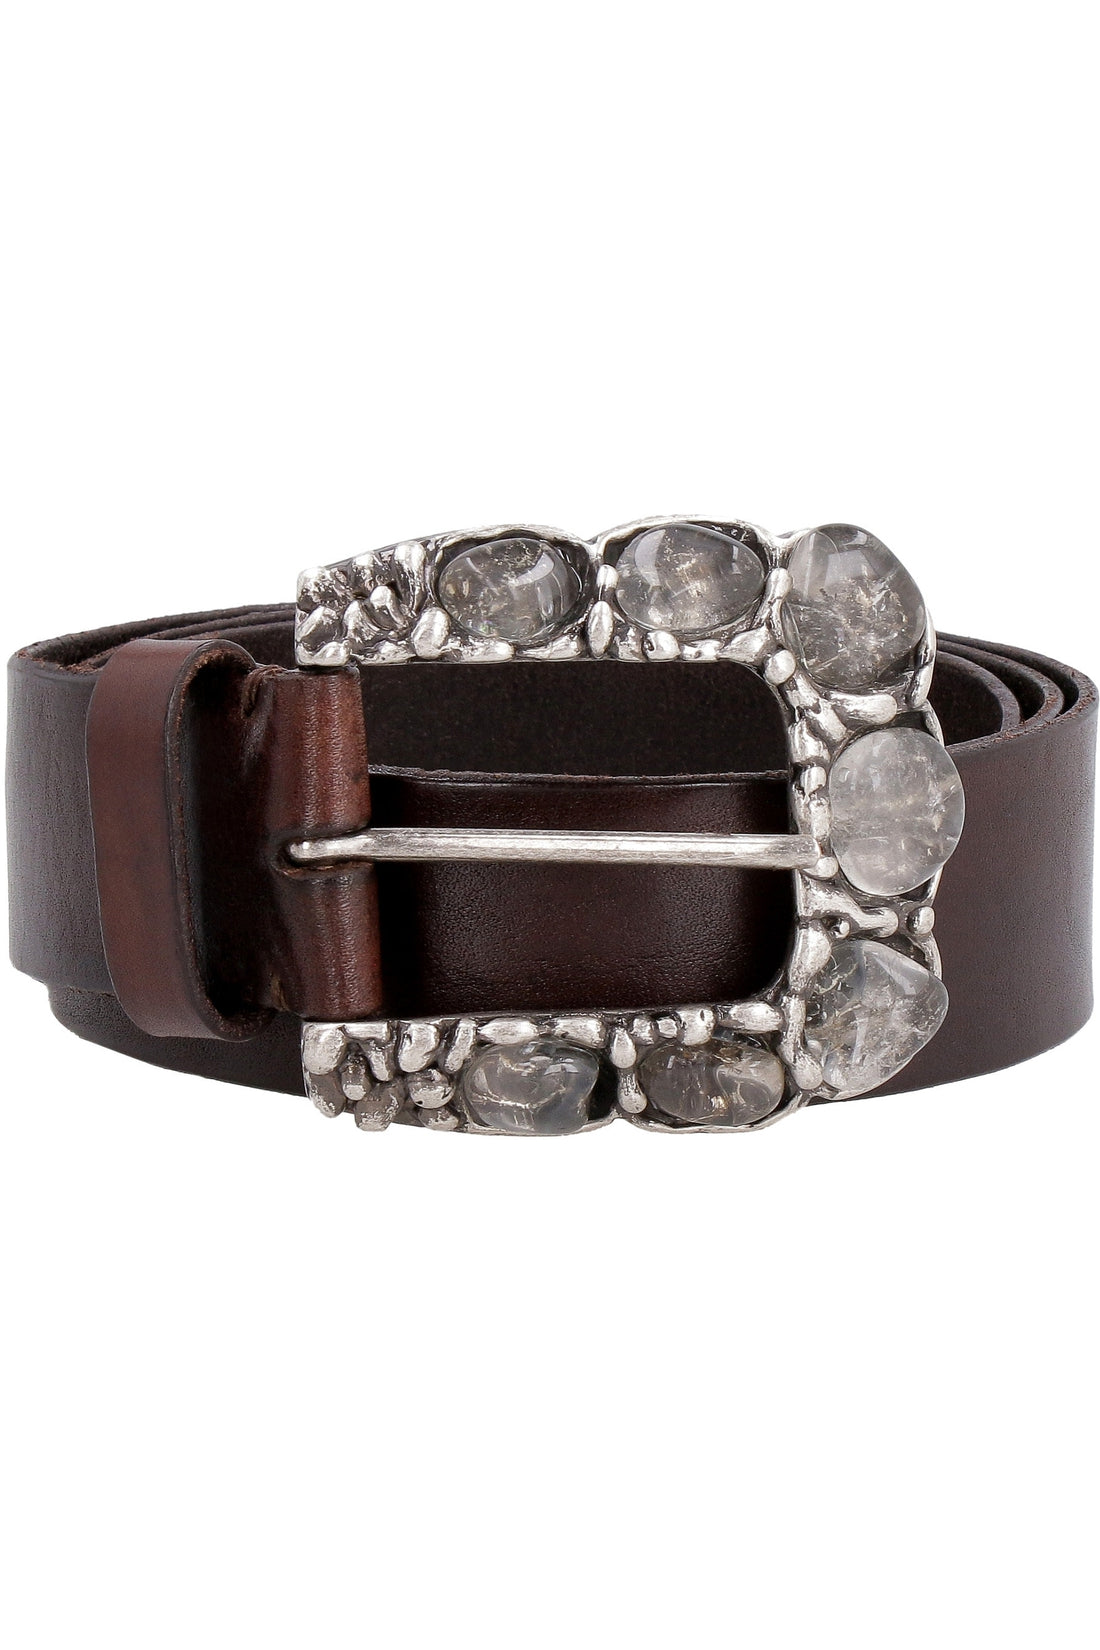 Parosh-OUTLET-SALE-Embellished buckle leather belt-ARCHIVIST